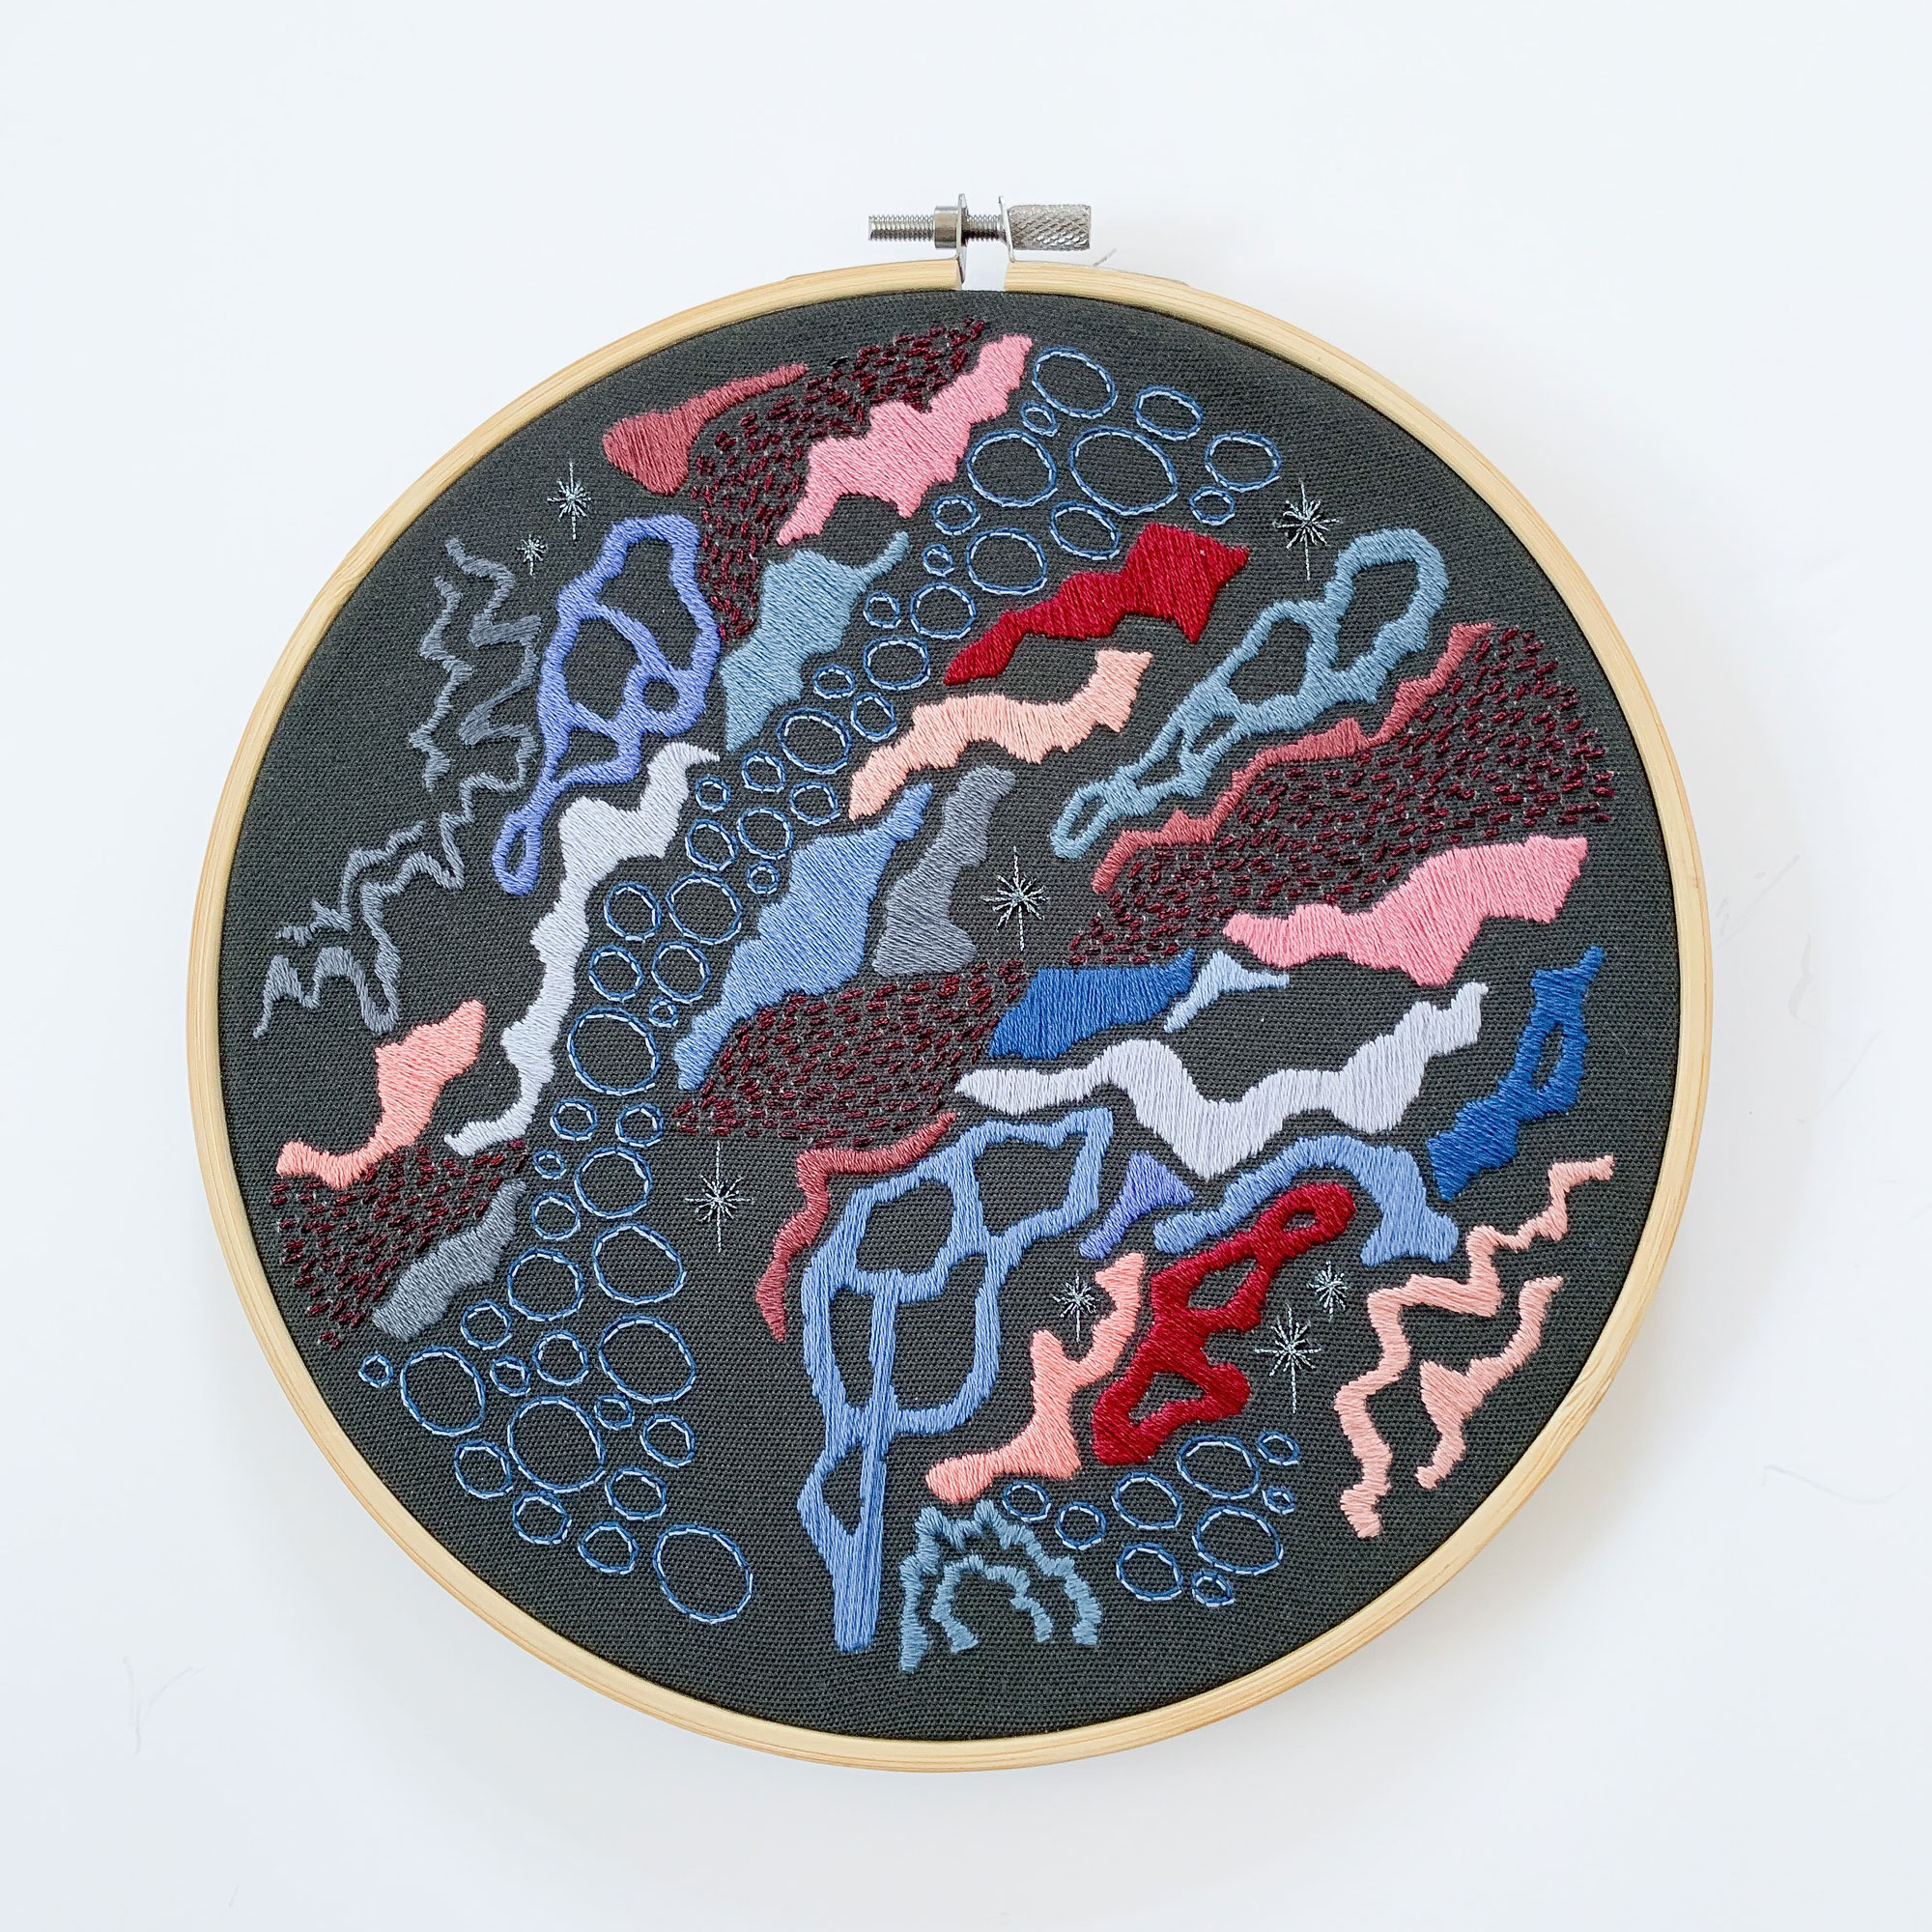 Hand Embroidery hoop art entery for SST creative bursary